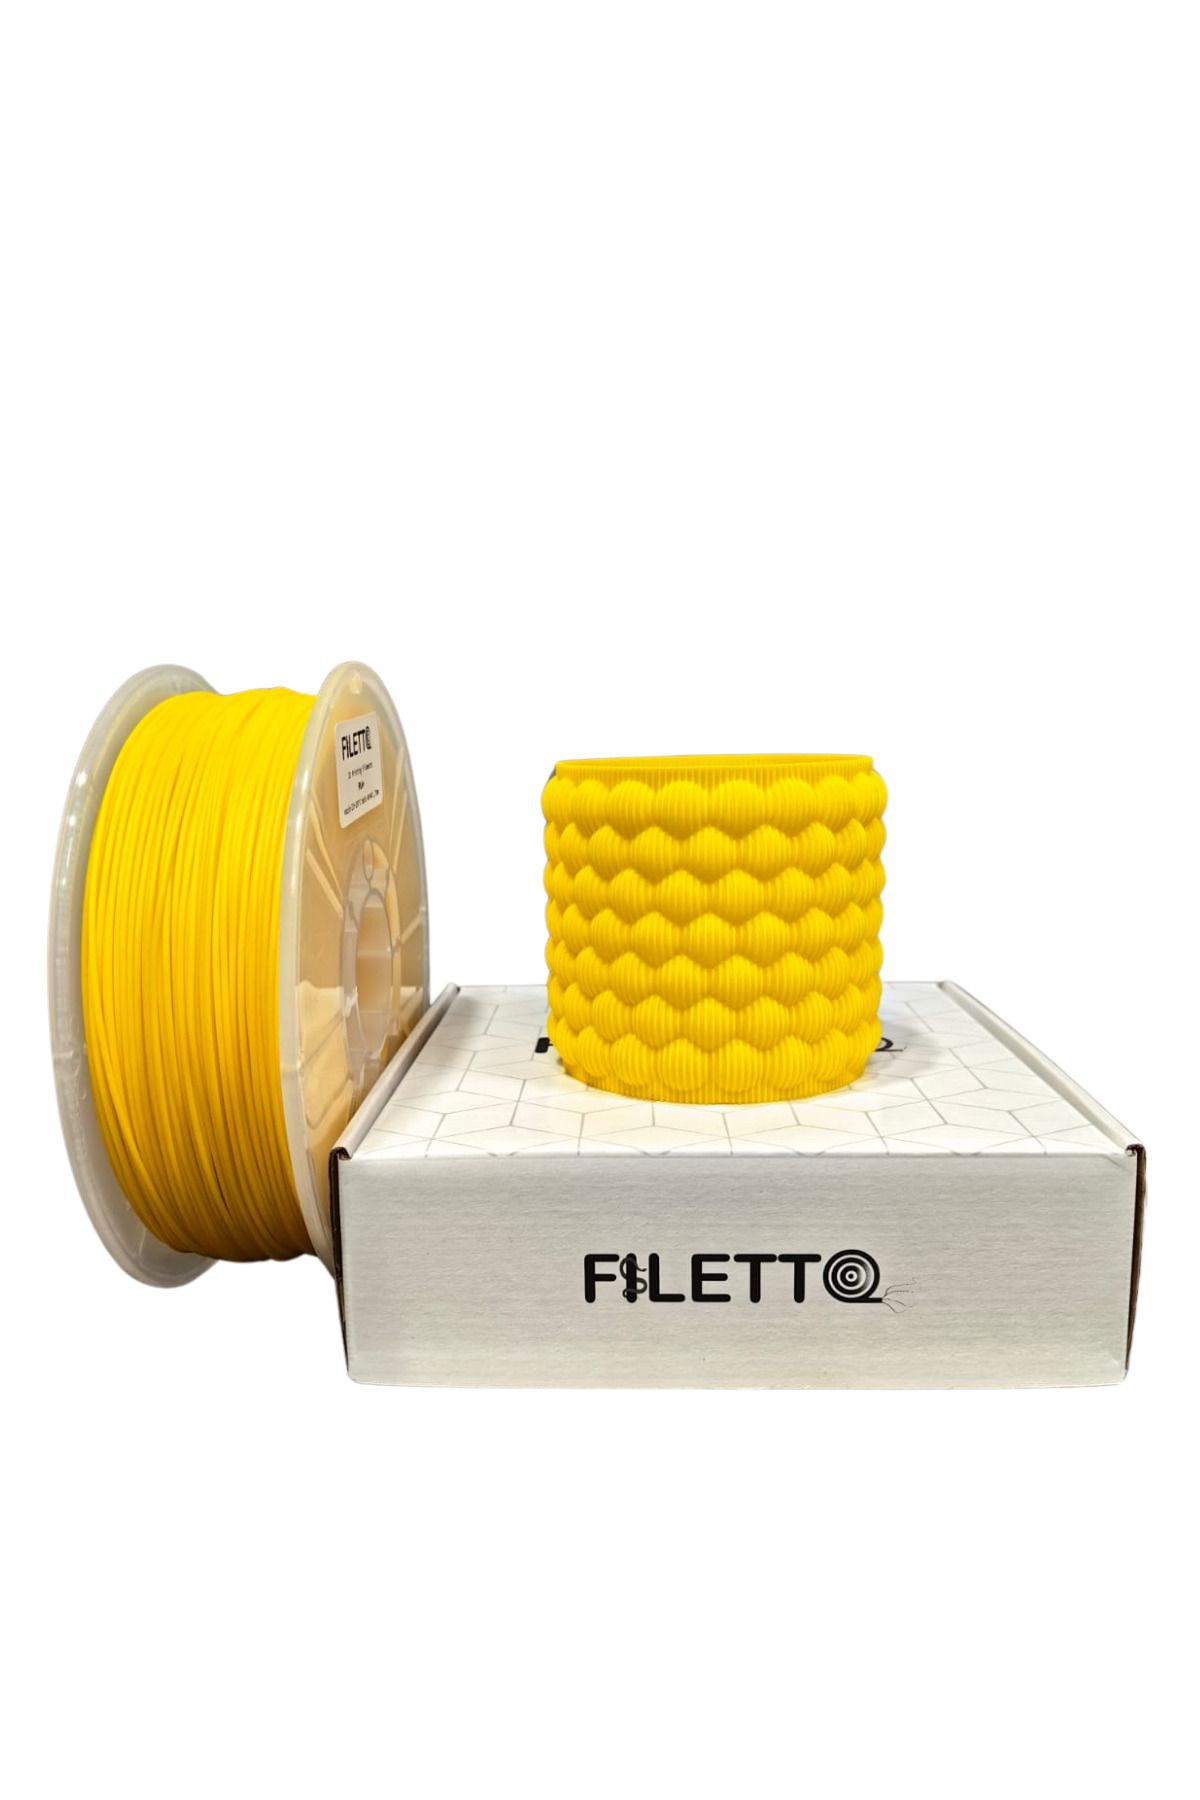 FİLETTO Filetto Pla+ Filament 1.75mm 1 KG - Sarı